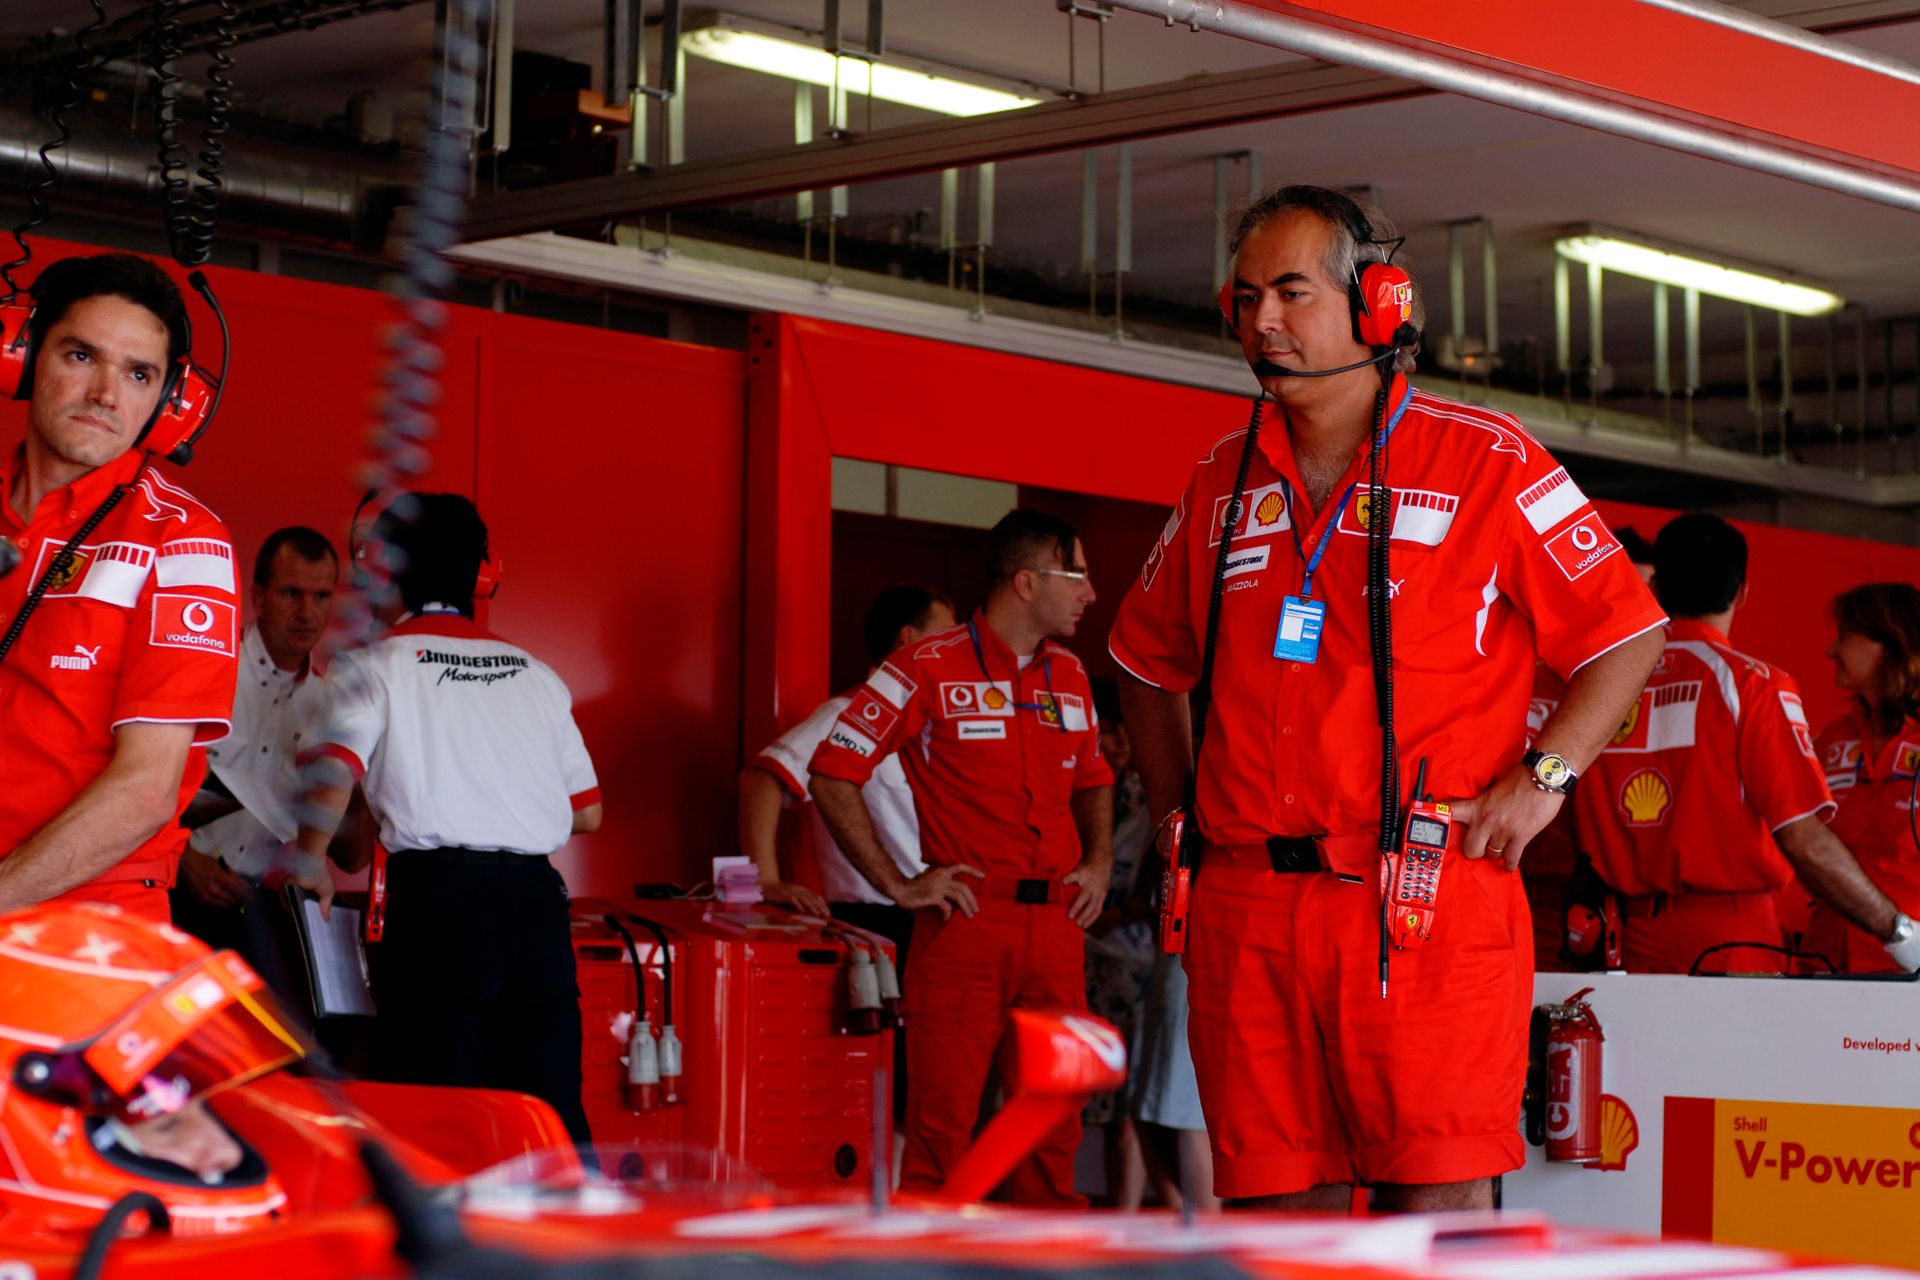 L'ingegner Luigi Mazzola in Formula 1 nei box della Scuderia Ferrari